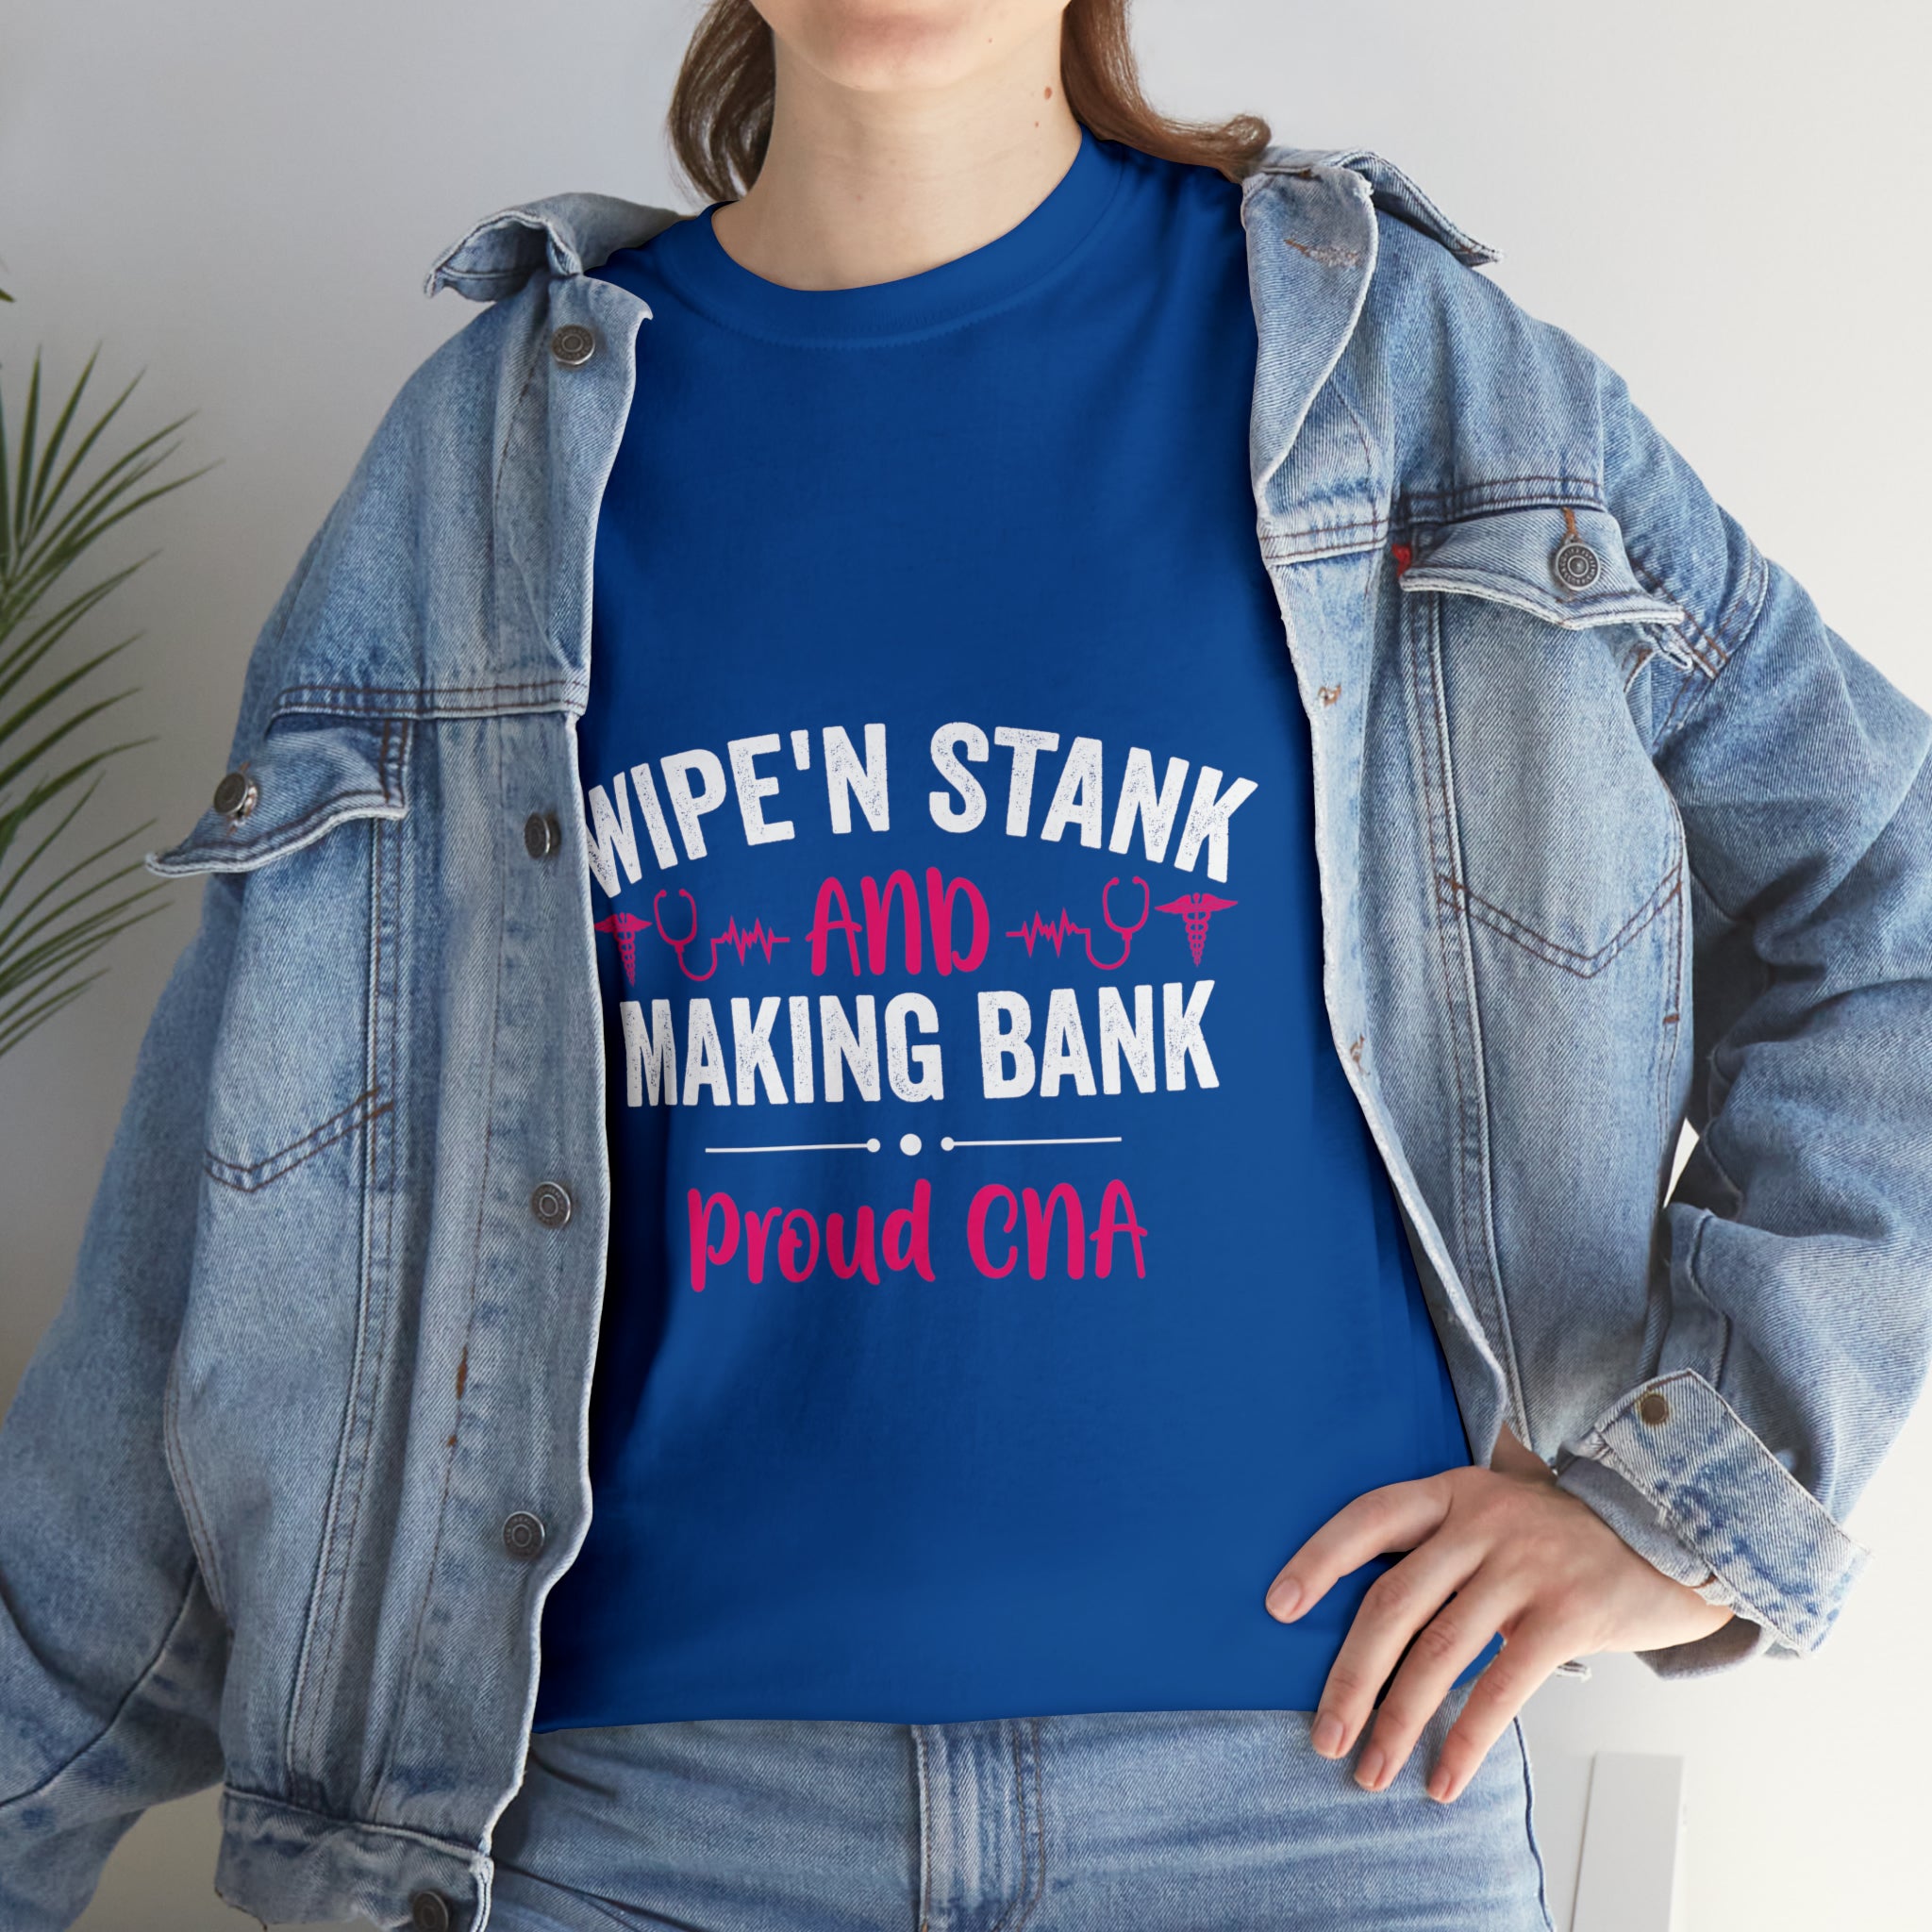 Making Bank